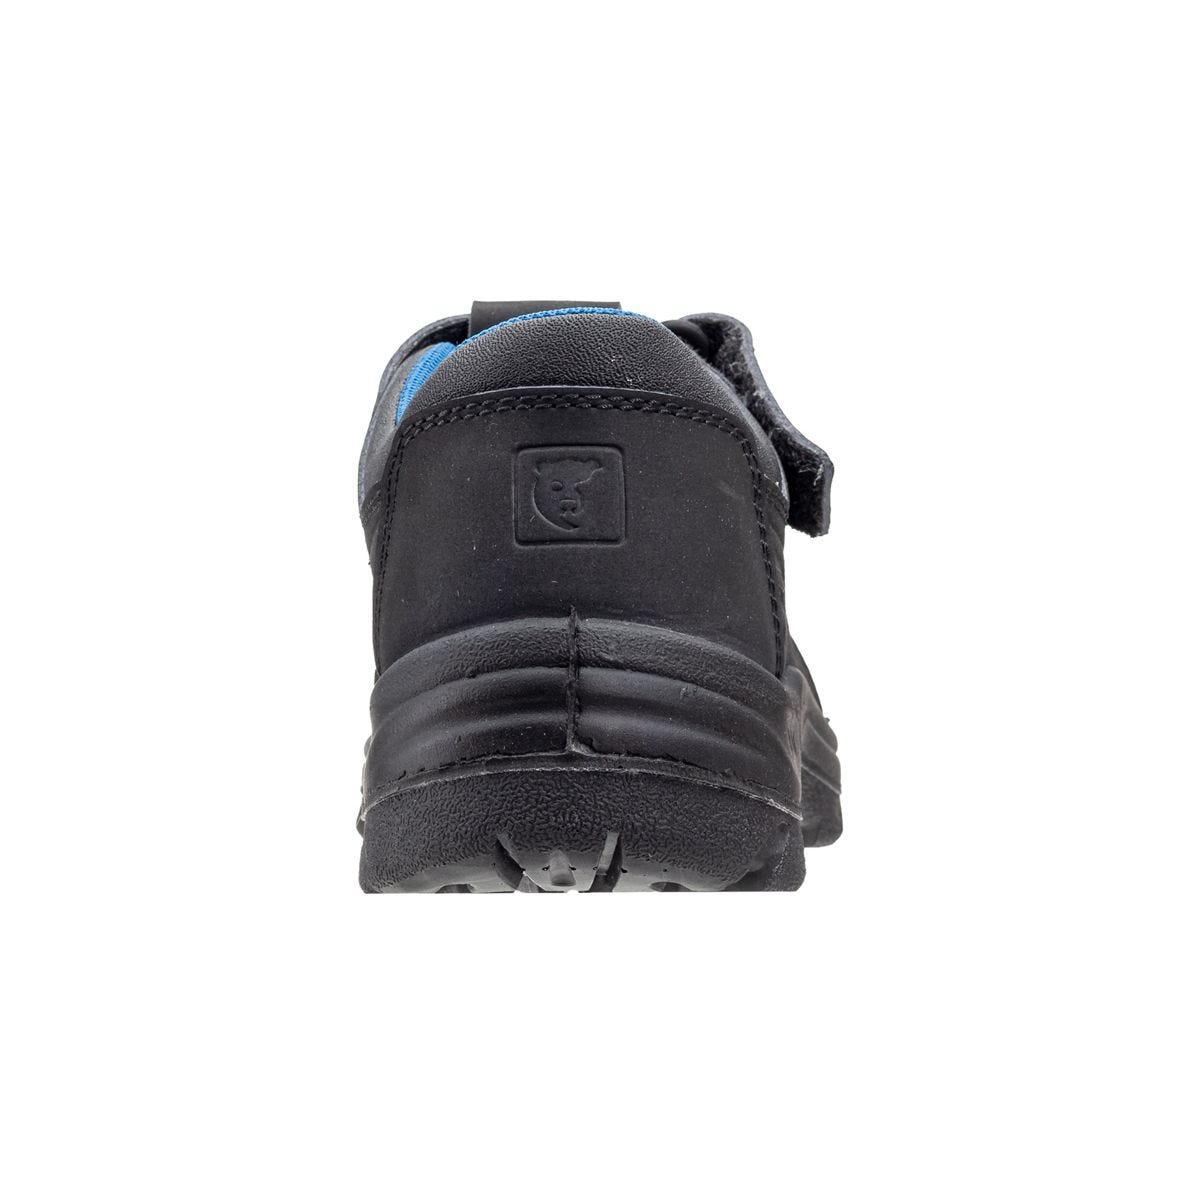 Sandales de sécurité basses Bono II Noir - Coverguard - Taille 39 2